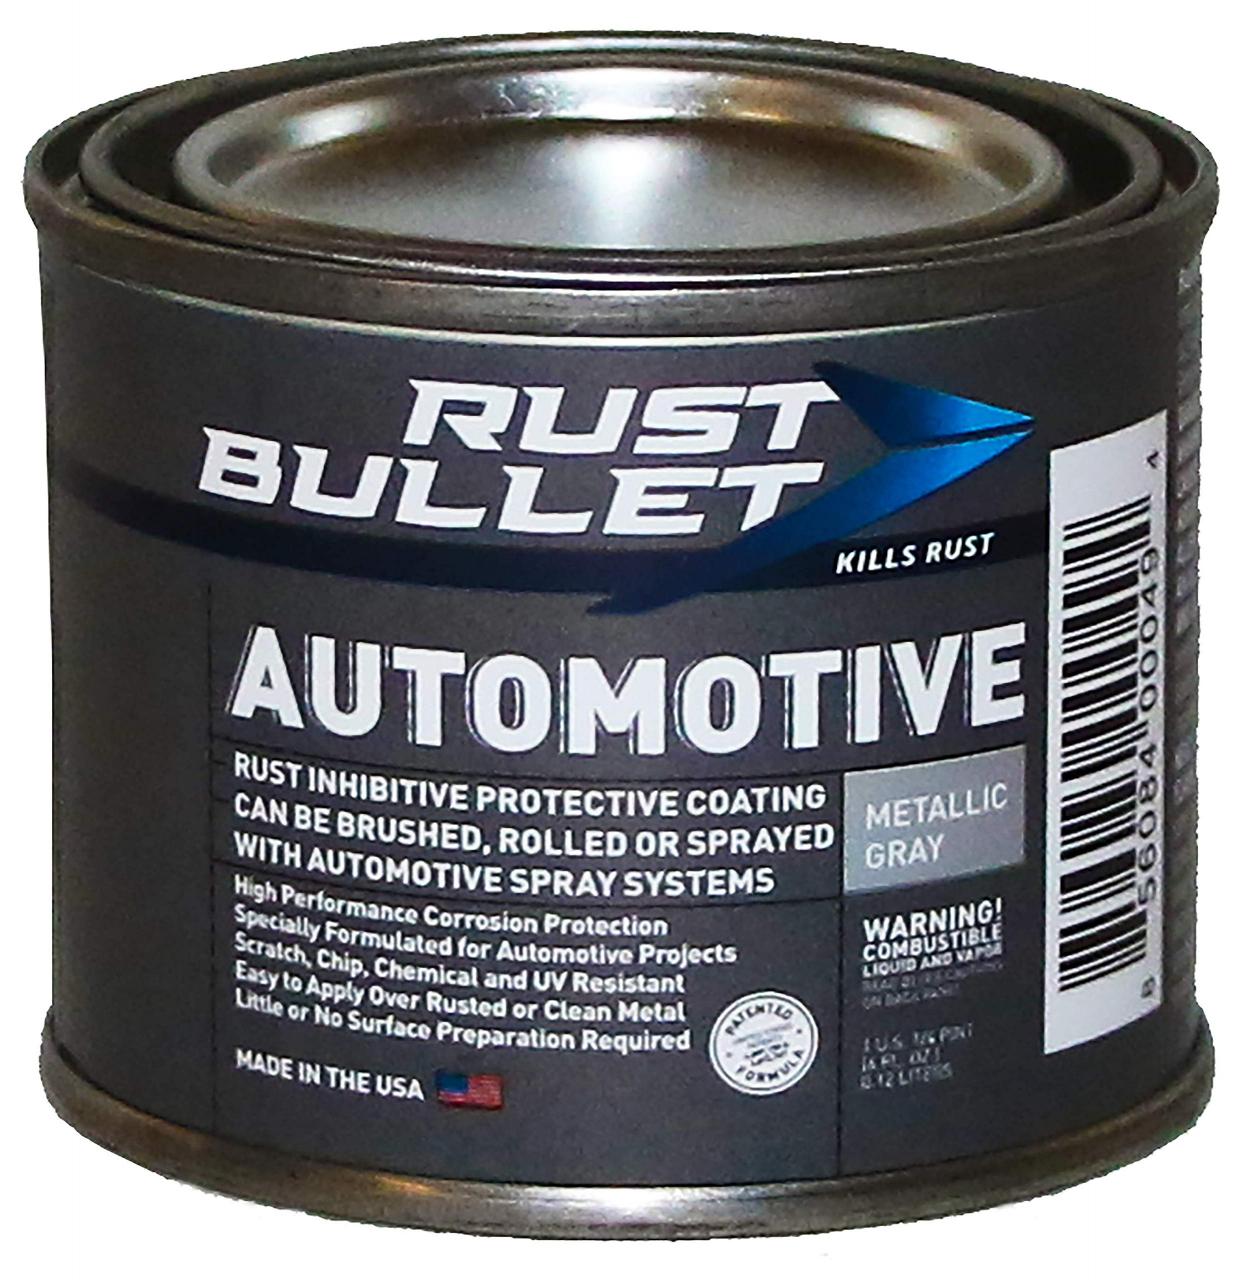 RUST BULLET - Automotive Rust Inhibitor Paint - Rust Preventive Protective  Coating - No Topcoat Needed - 4 oz Can, Metallic Gray- Buy Online in Sweden  at Desertcart - 1635877.